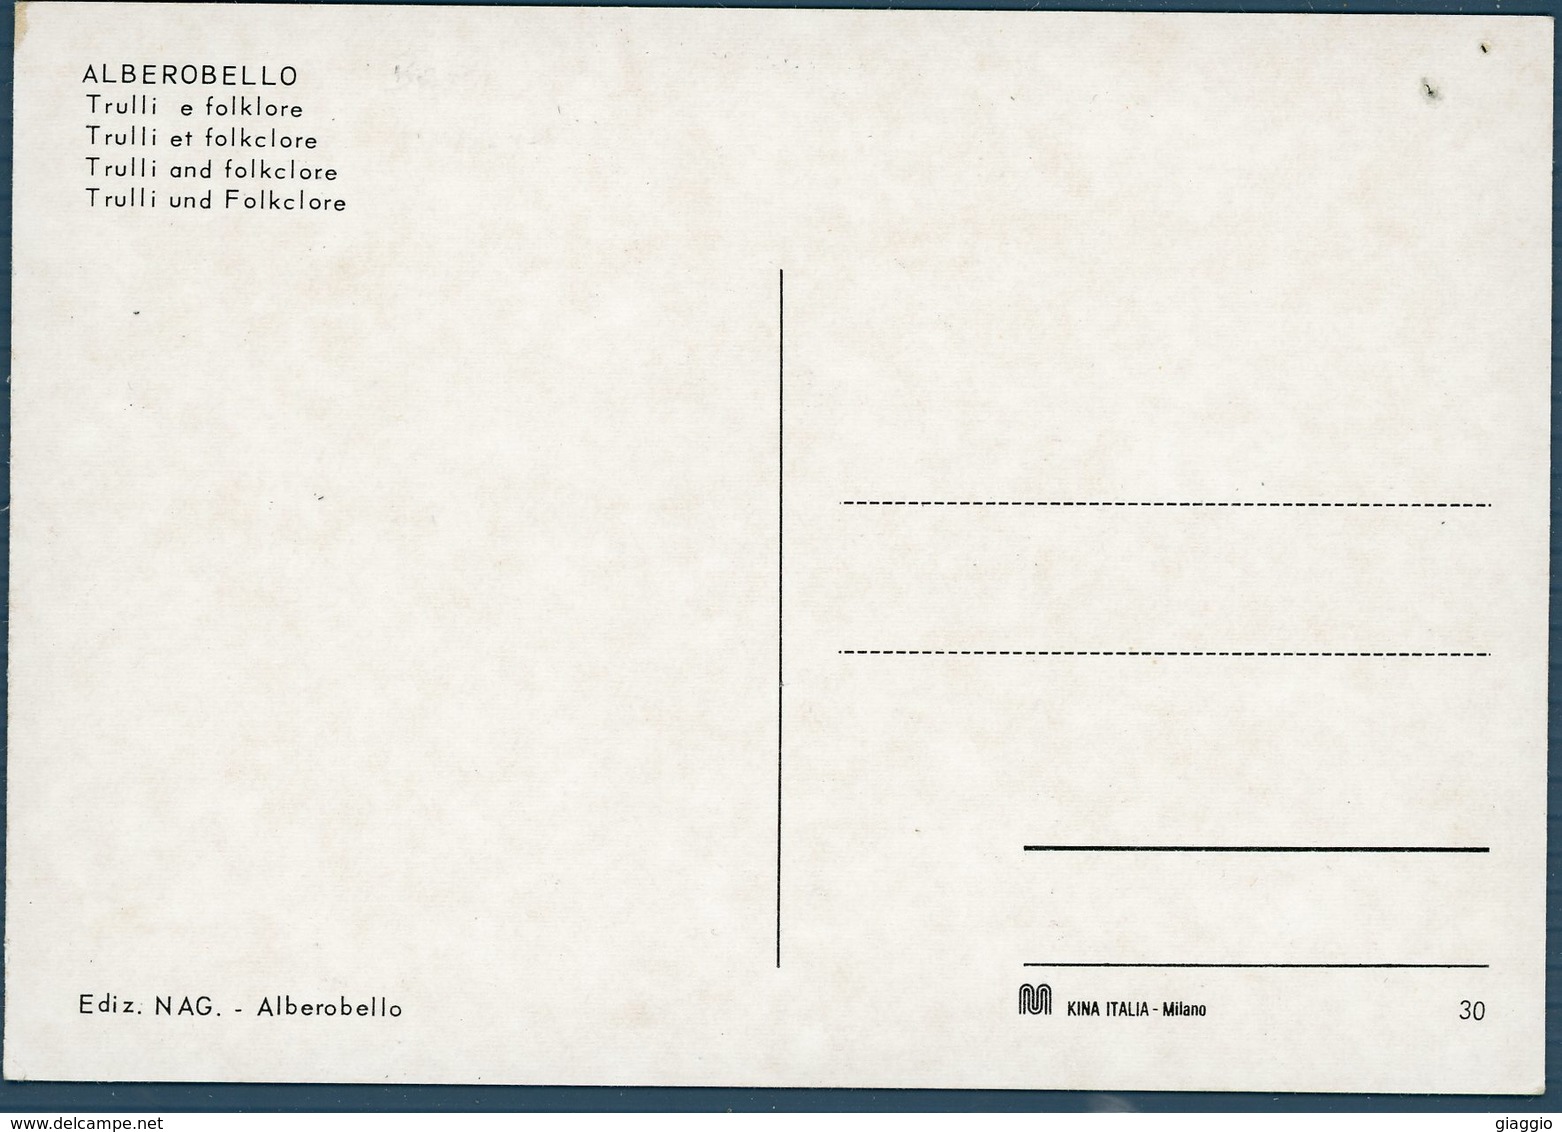 °°° Cartolina N. 68 Alberobello Trulli E Folklore Nuova Fori °°° - Bari